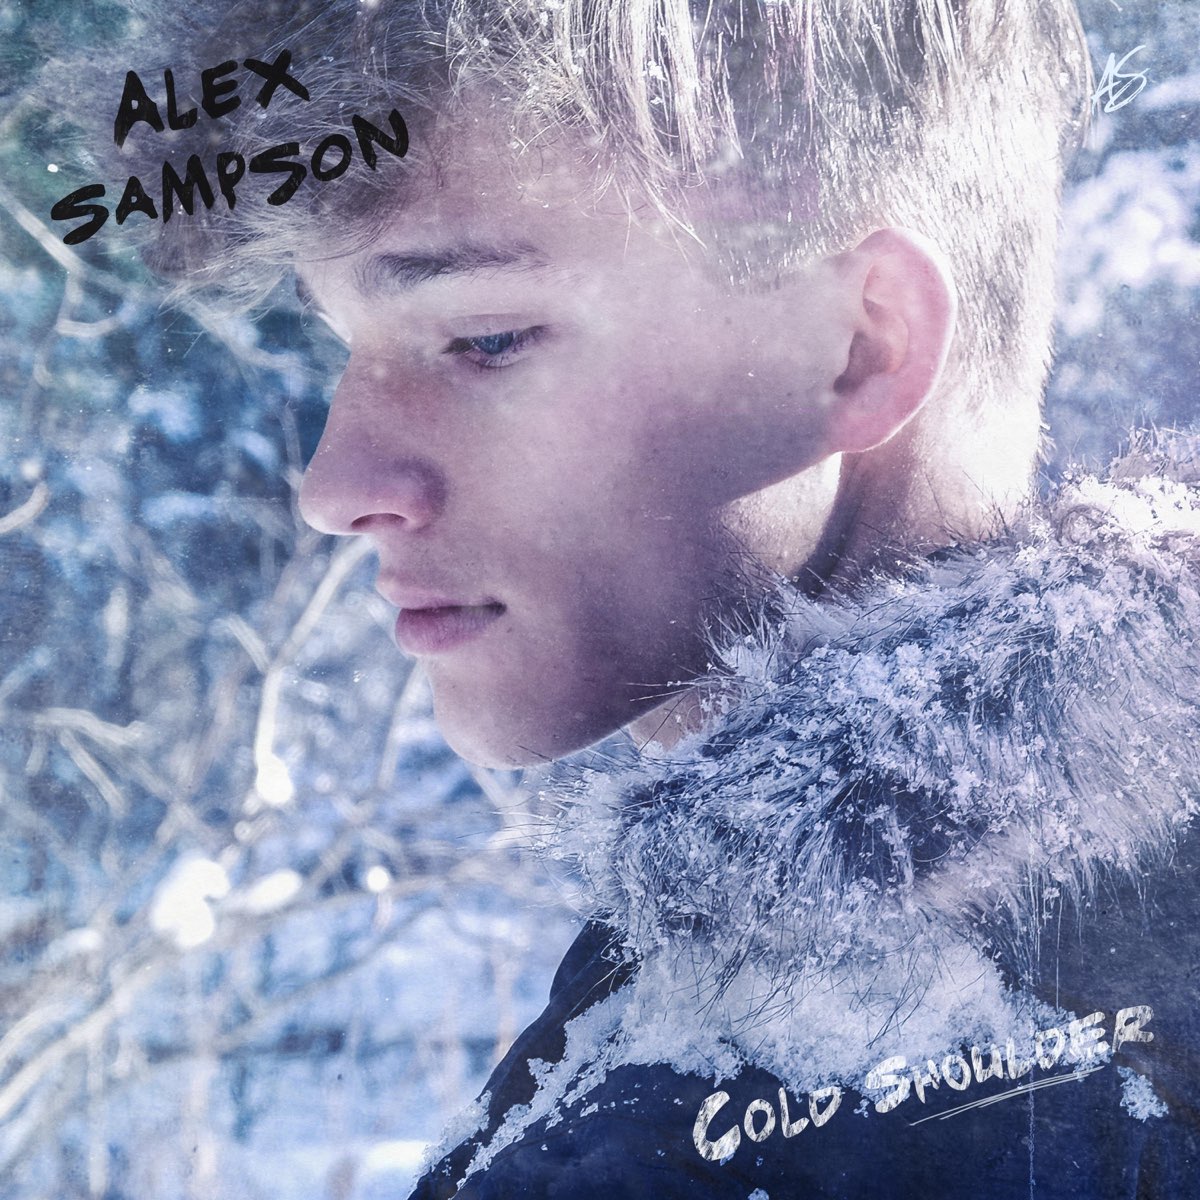 Между нами холода песня. Alex Sampson. Alex Cold. Cold Shoulder обложка. Фото трека холод.